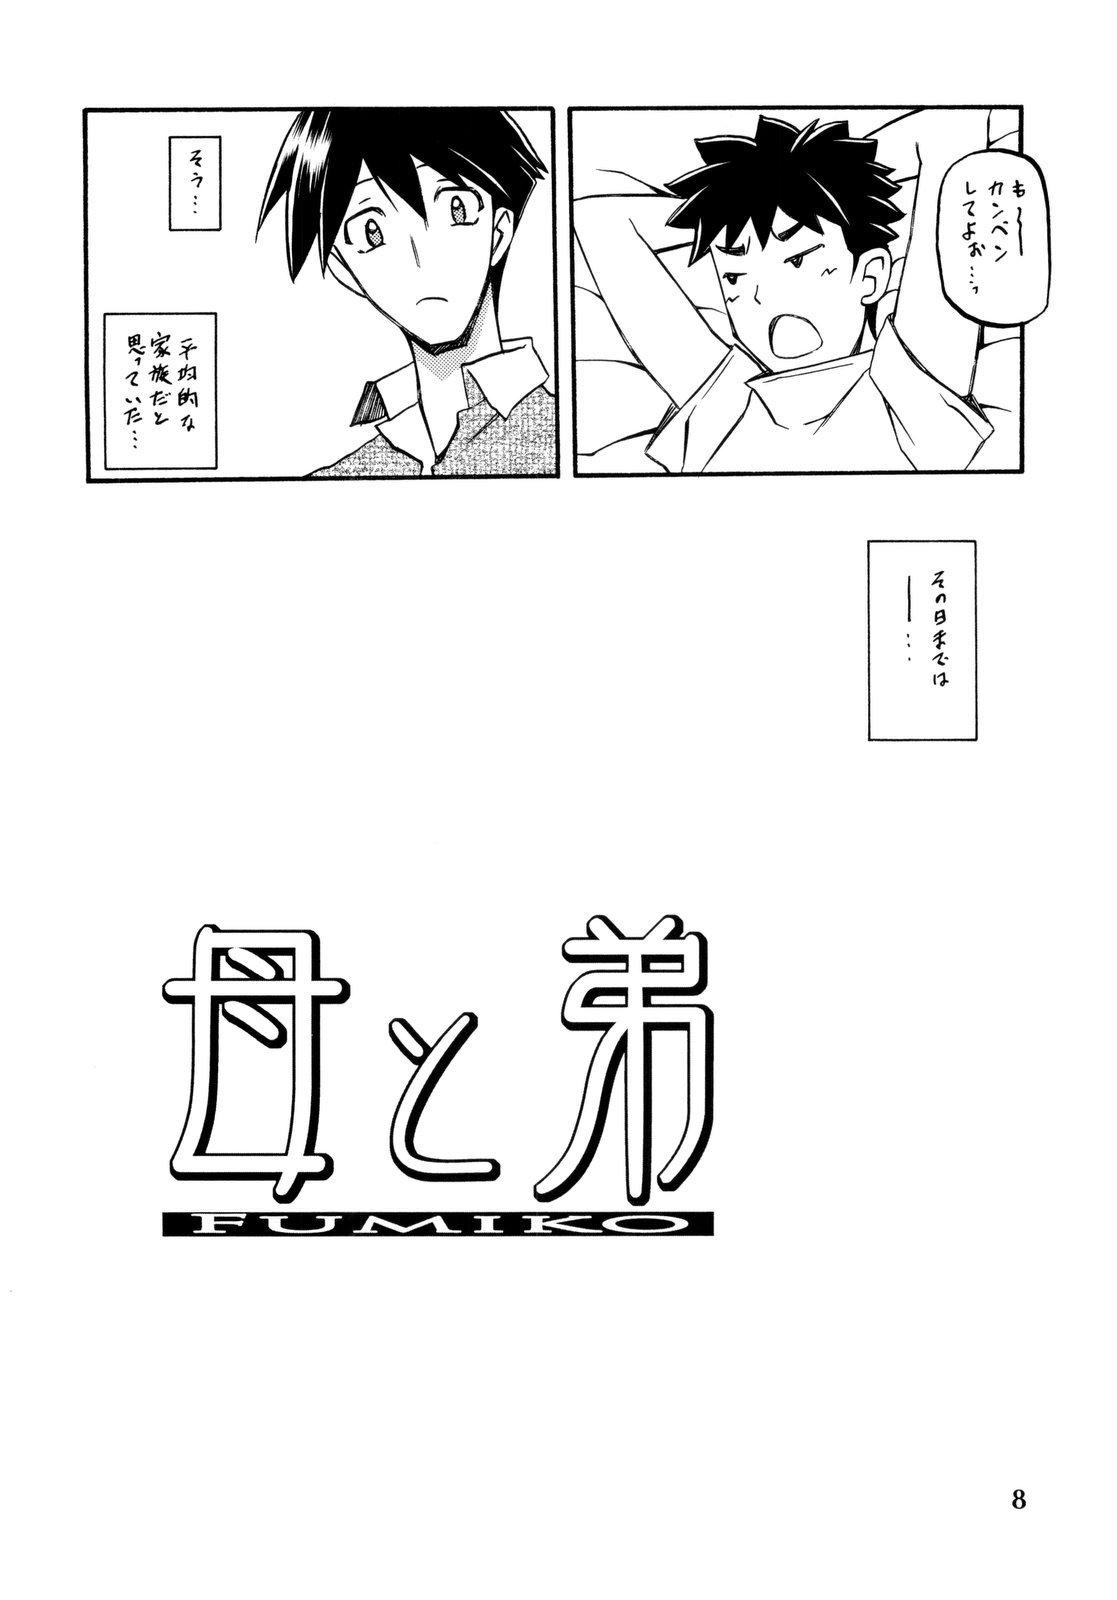 Pegging Akebi no Mi - Fumiko - Akebi no mi Tan - Page 8